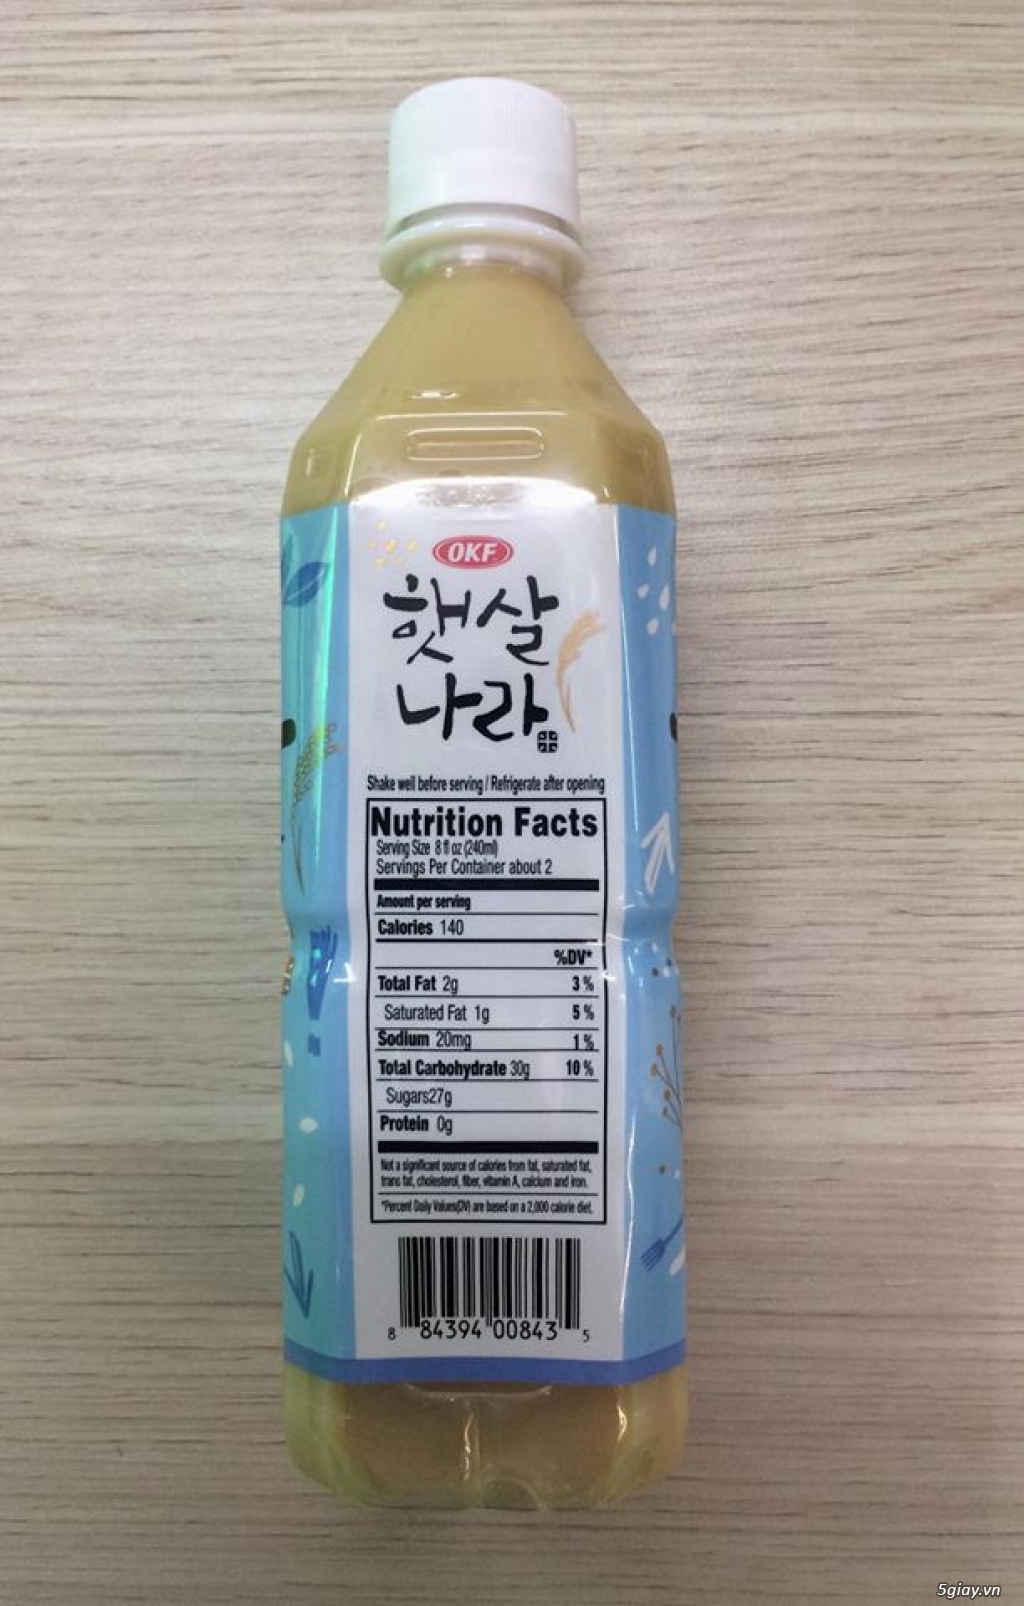 Sữa gạo Hàn Quốc. Nhập trực tiếp từ Hàn Quốc. An Toàn - Chất Lượng. - 2